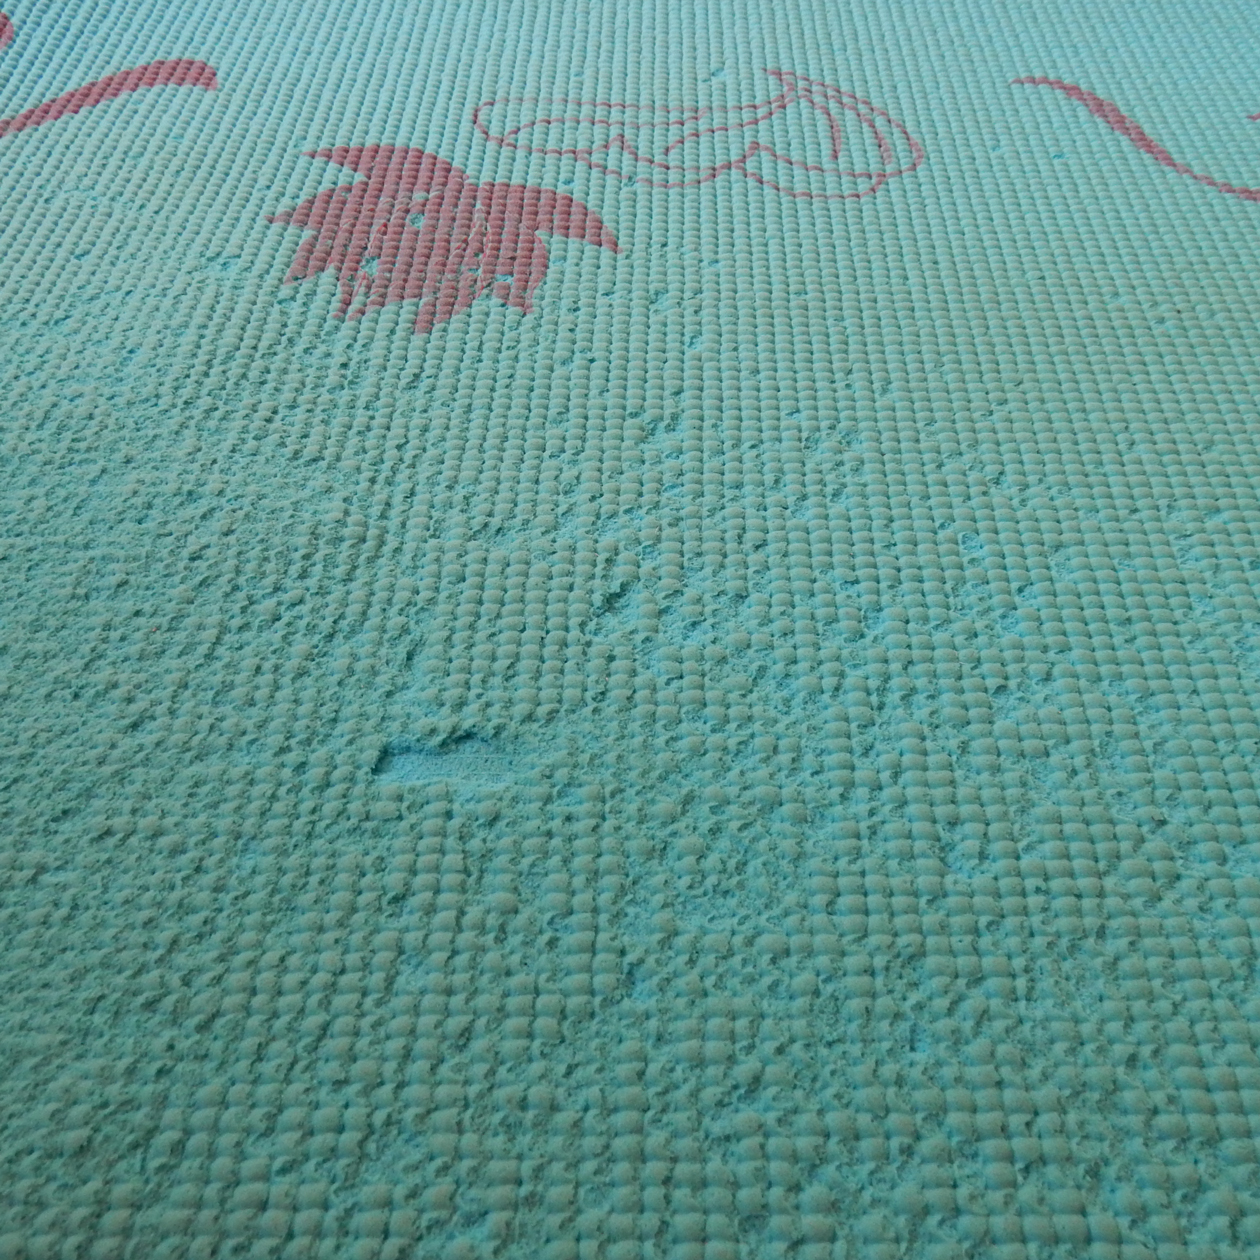 Так выглядел мой коврик из ТПЭ: материал частично раскрошился, грязь перестала отстирываться